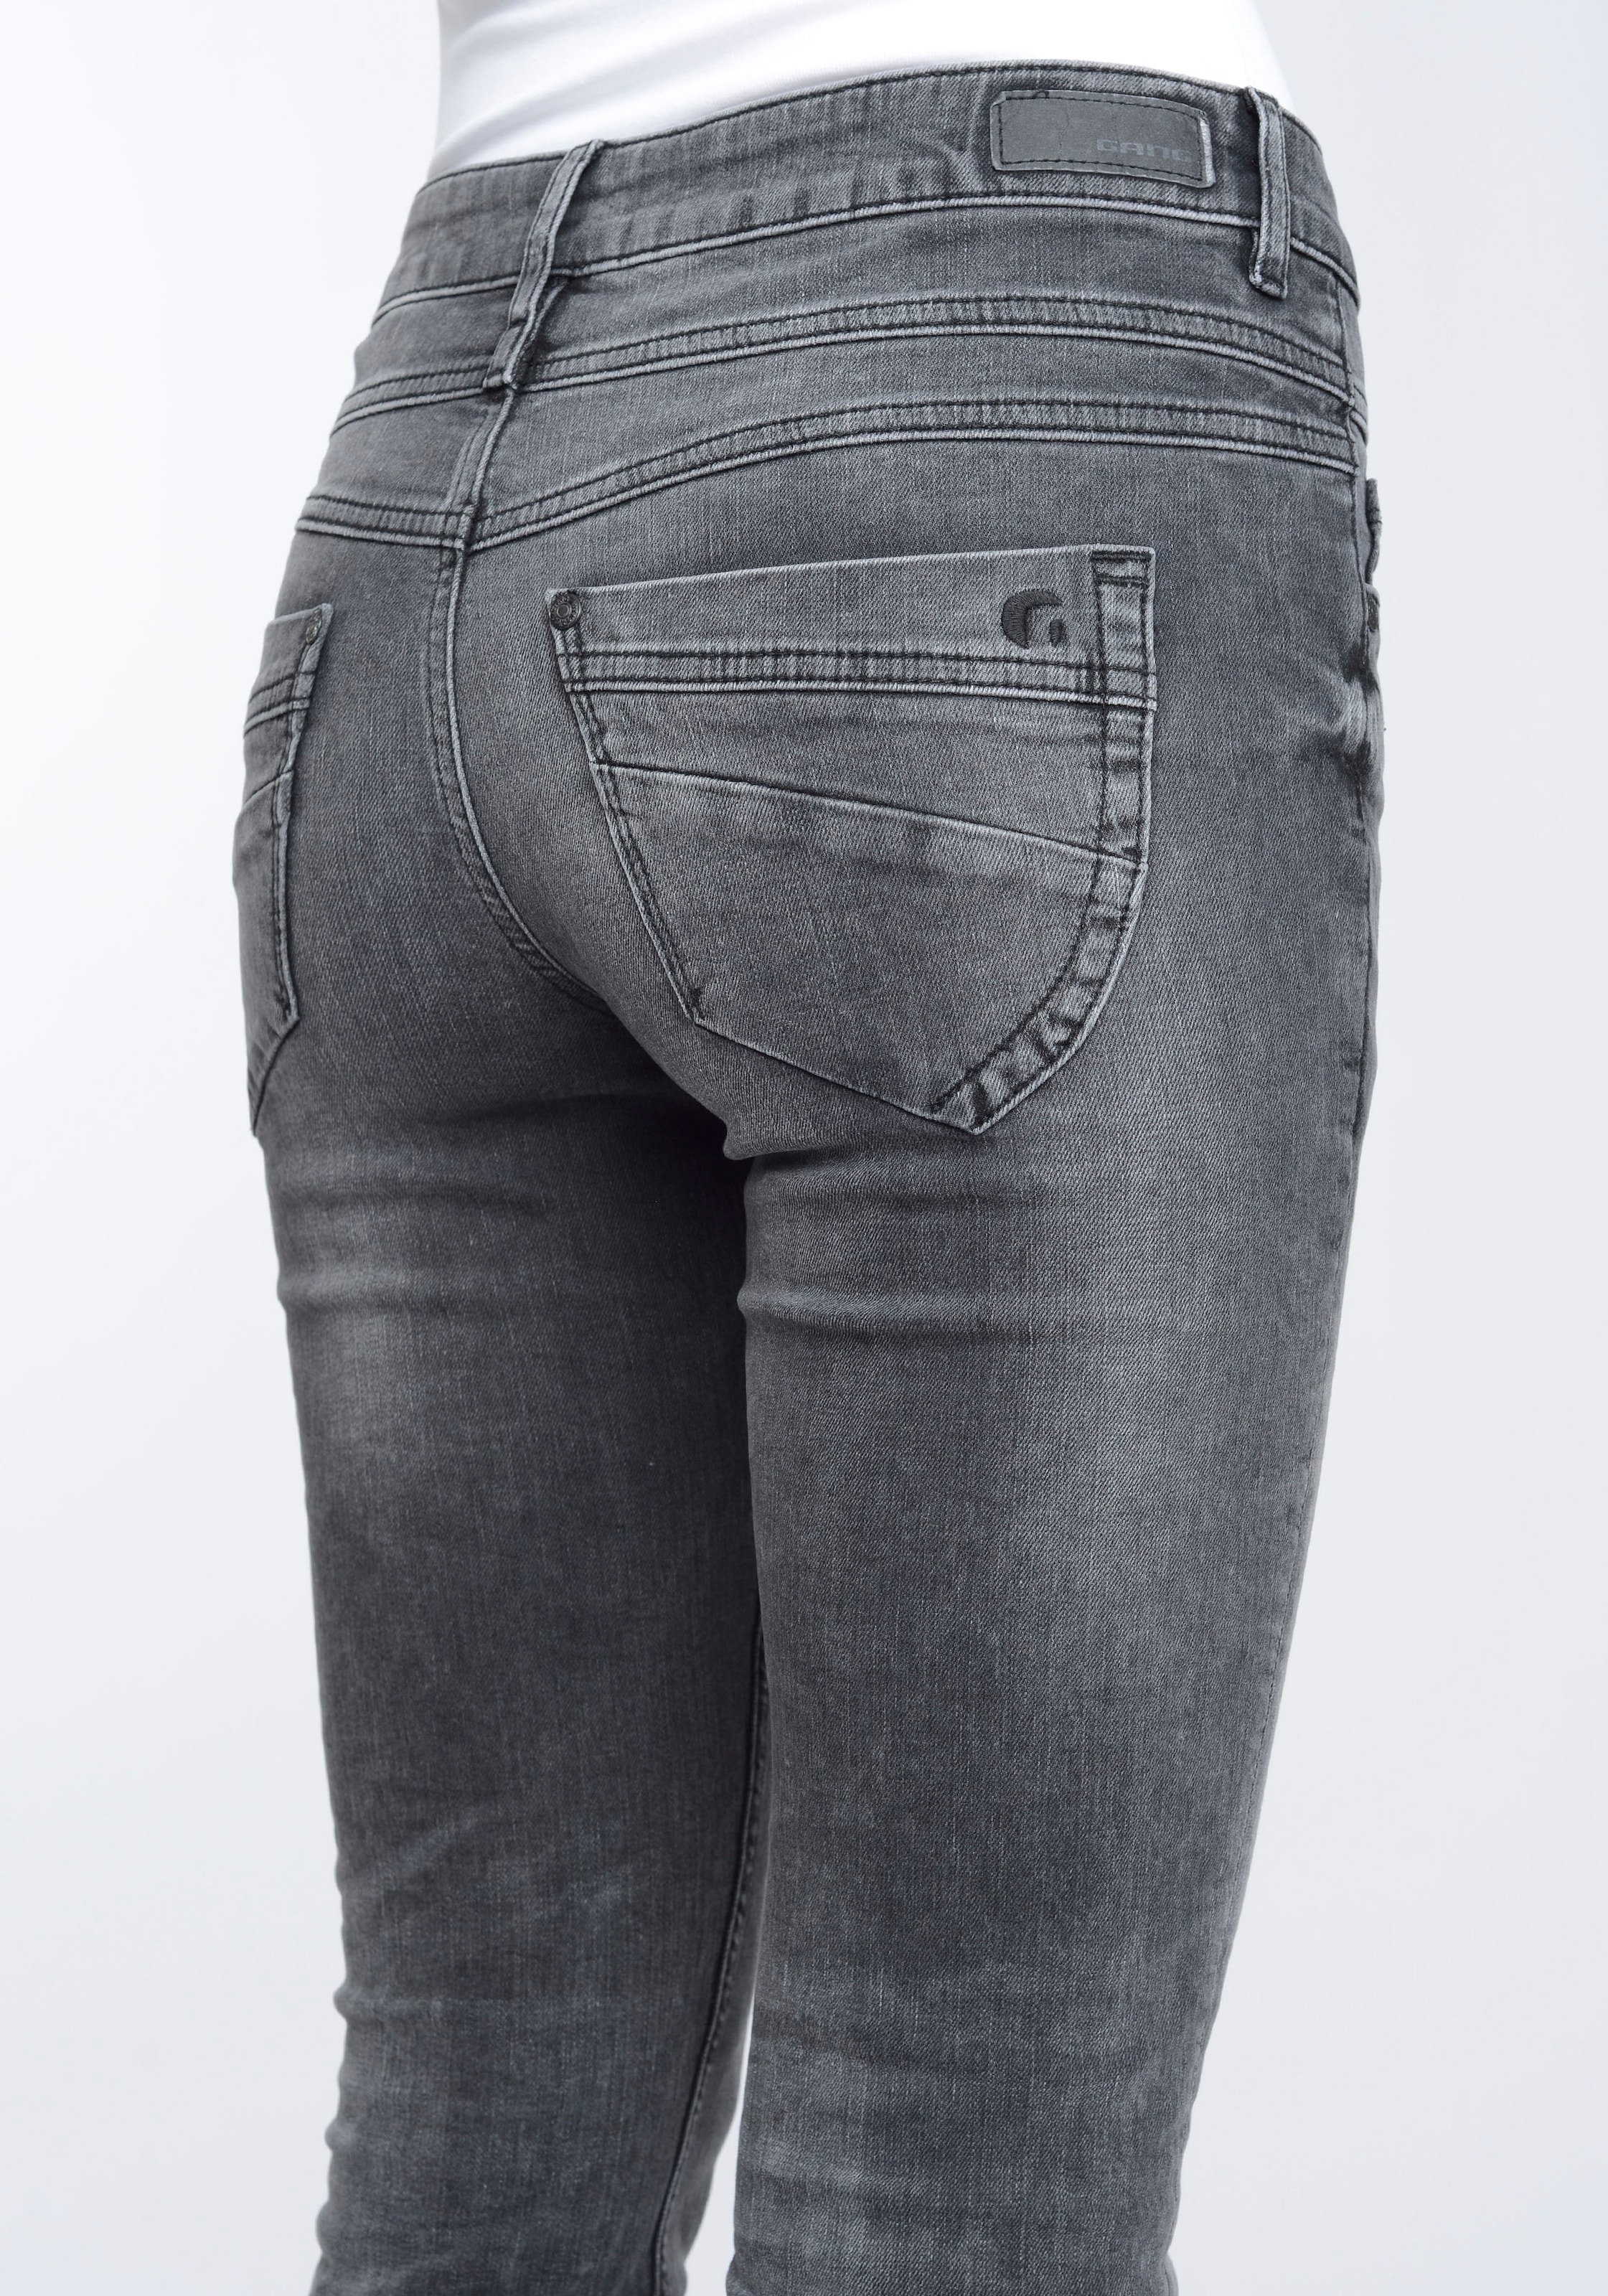 GANG mit Skinny-fit-Jeans 3-Knopf-Verschluss bei OTTOversand »94MORA«, Passe vorne und